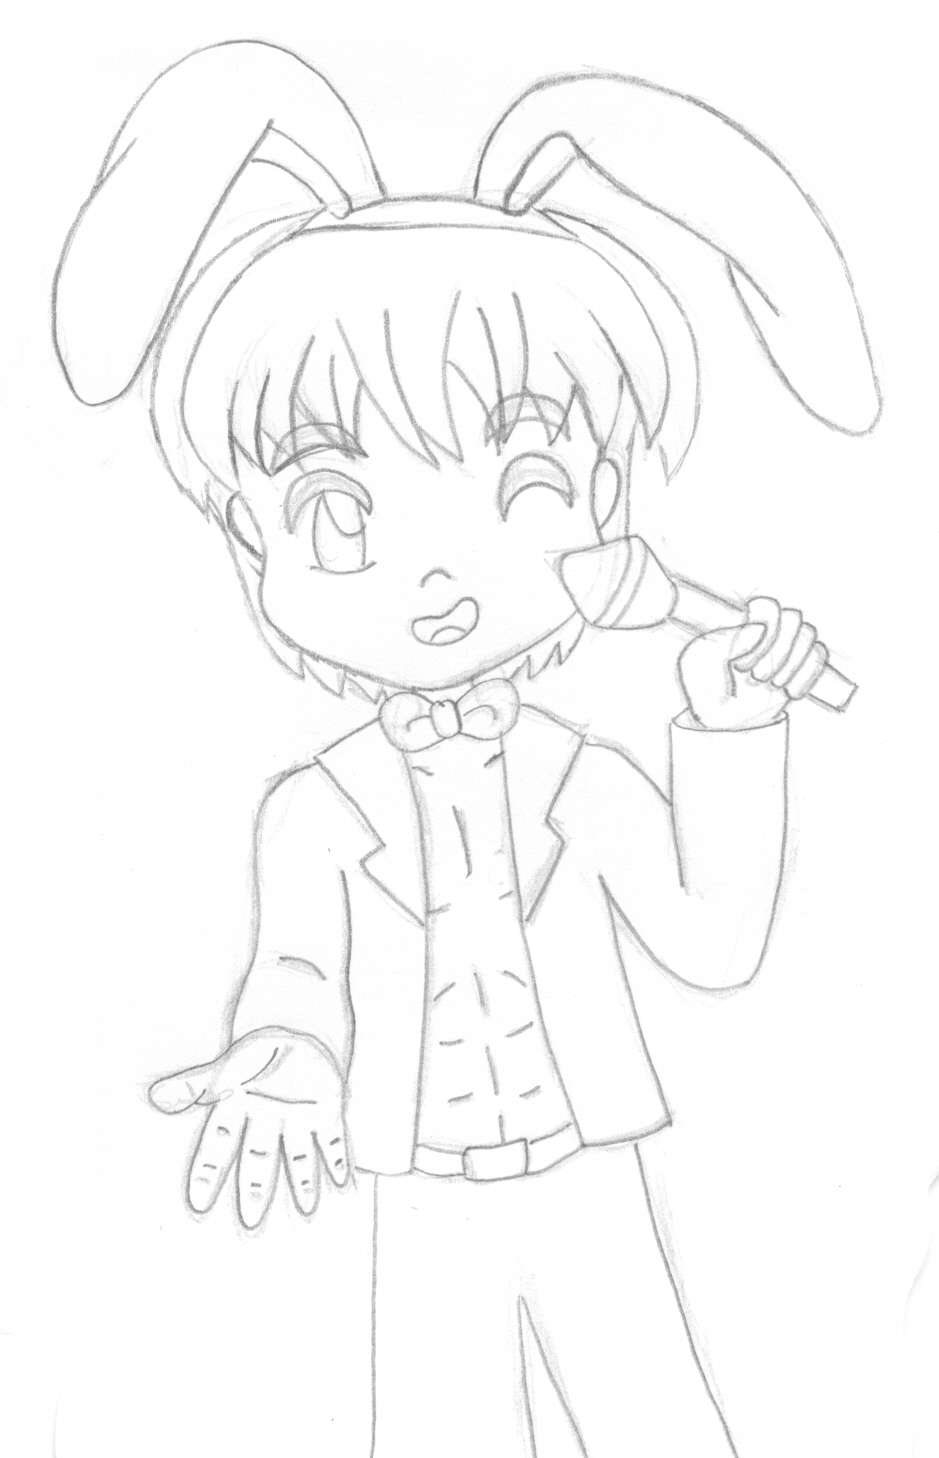 Jessie Rabbit sketch by AzureMikari